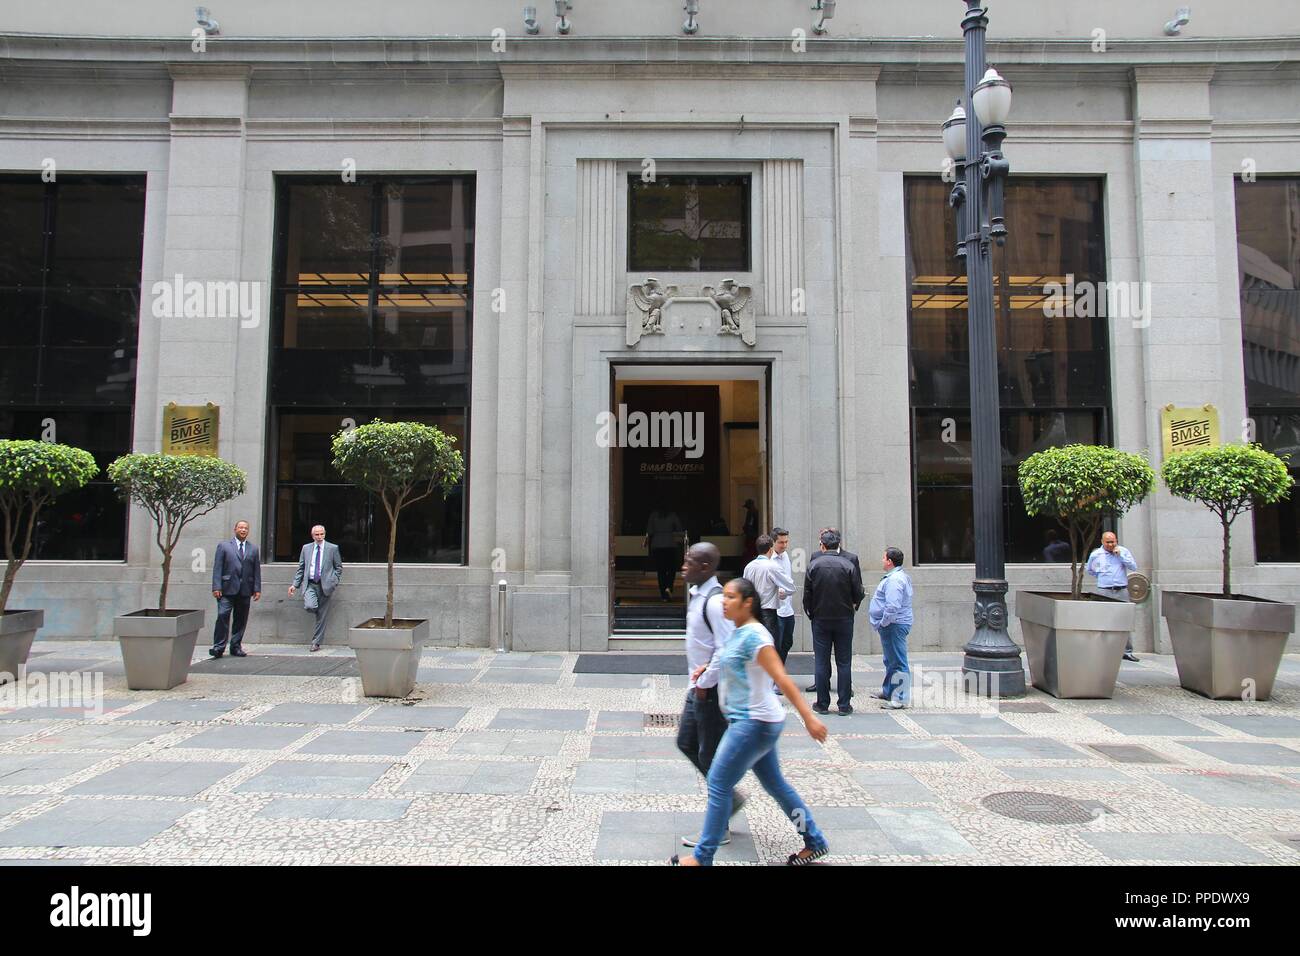 SAO PAULO, Brasile - 6 ottobre 2014: la gente a piedi da BM&F Bovespa Stock Exchange in Sao Paulo. Bovespa è la più grande borsa in Brasile con 362 Foto Stock